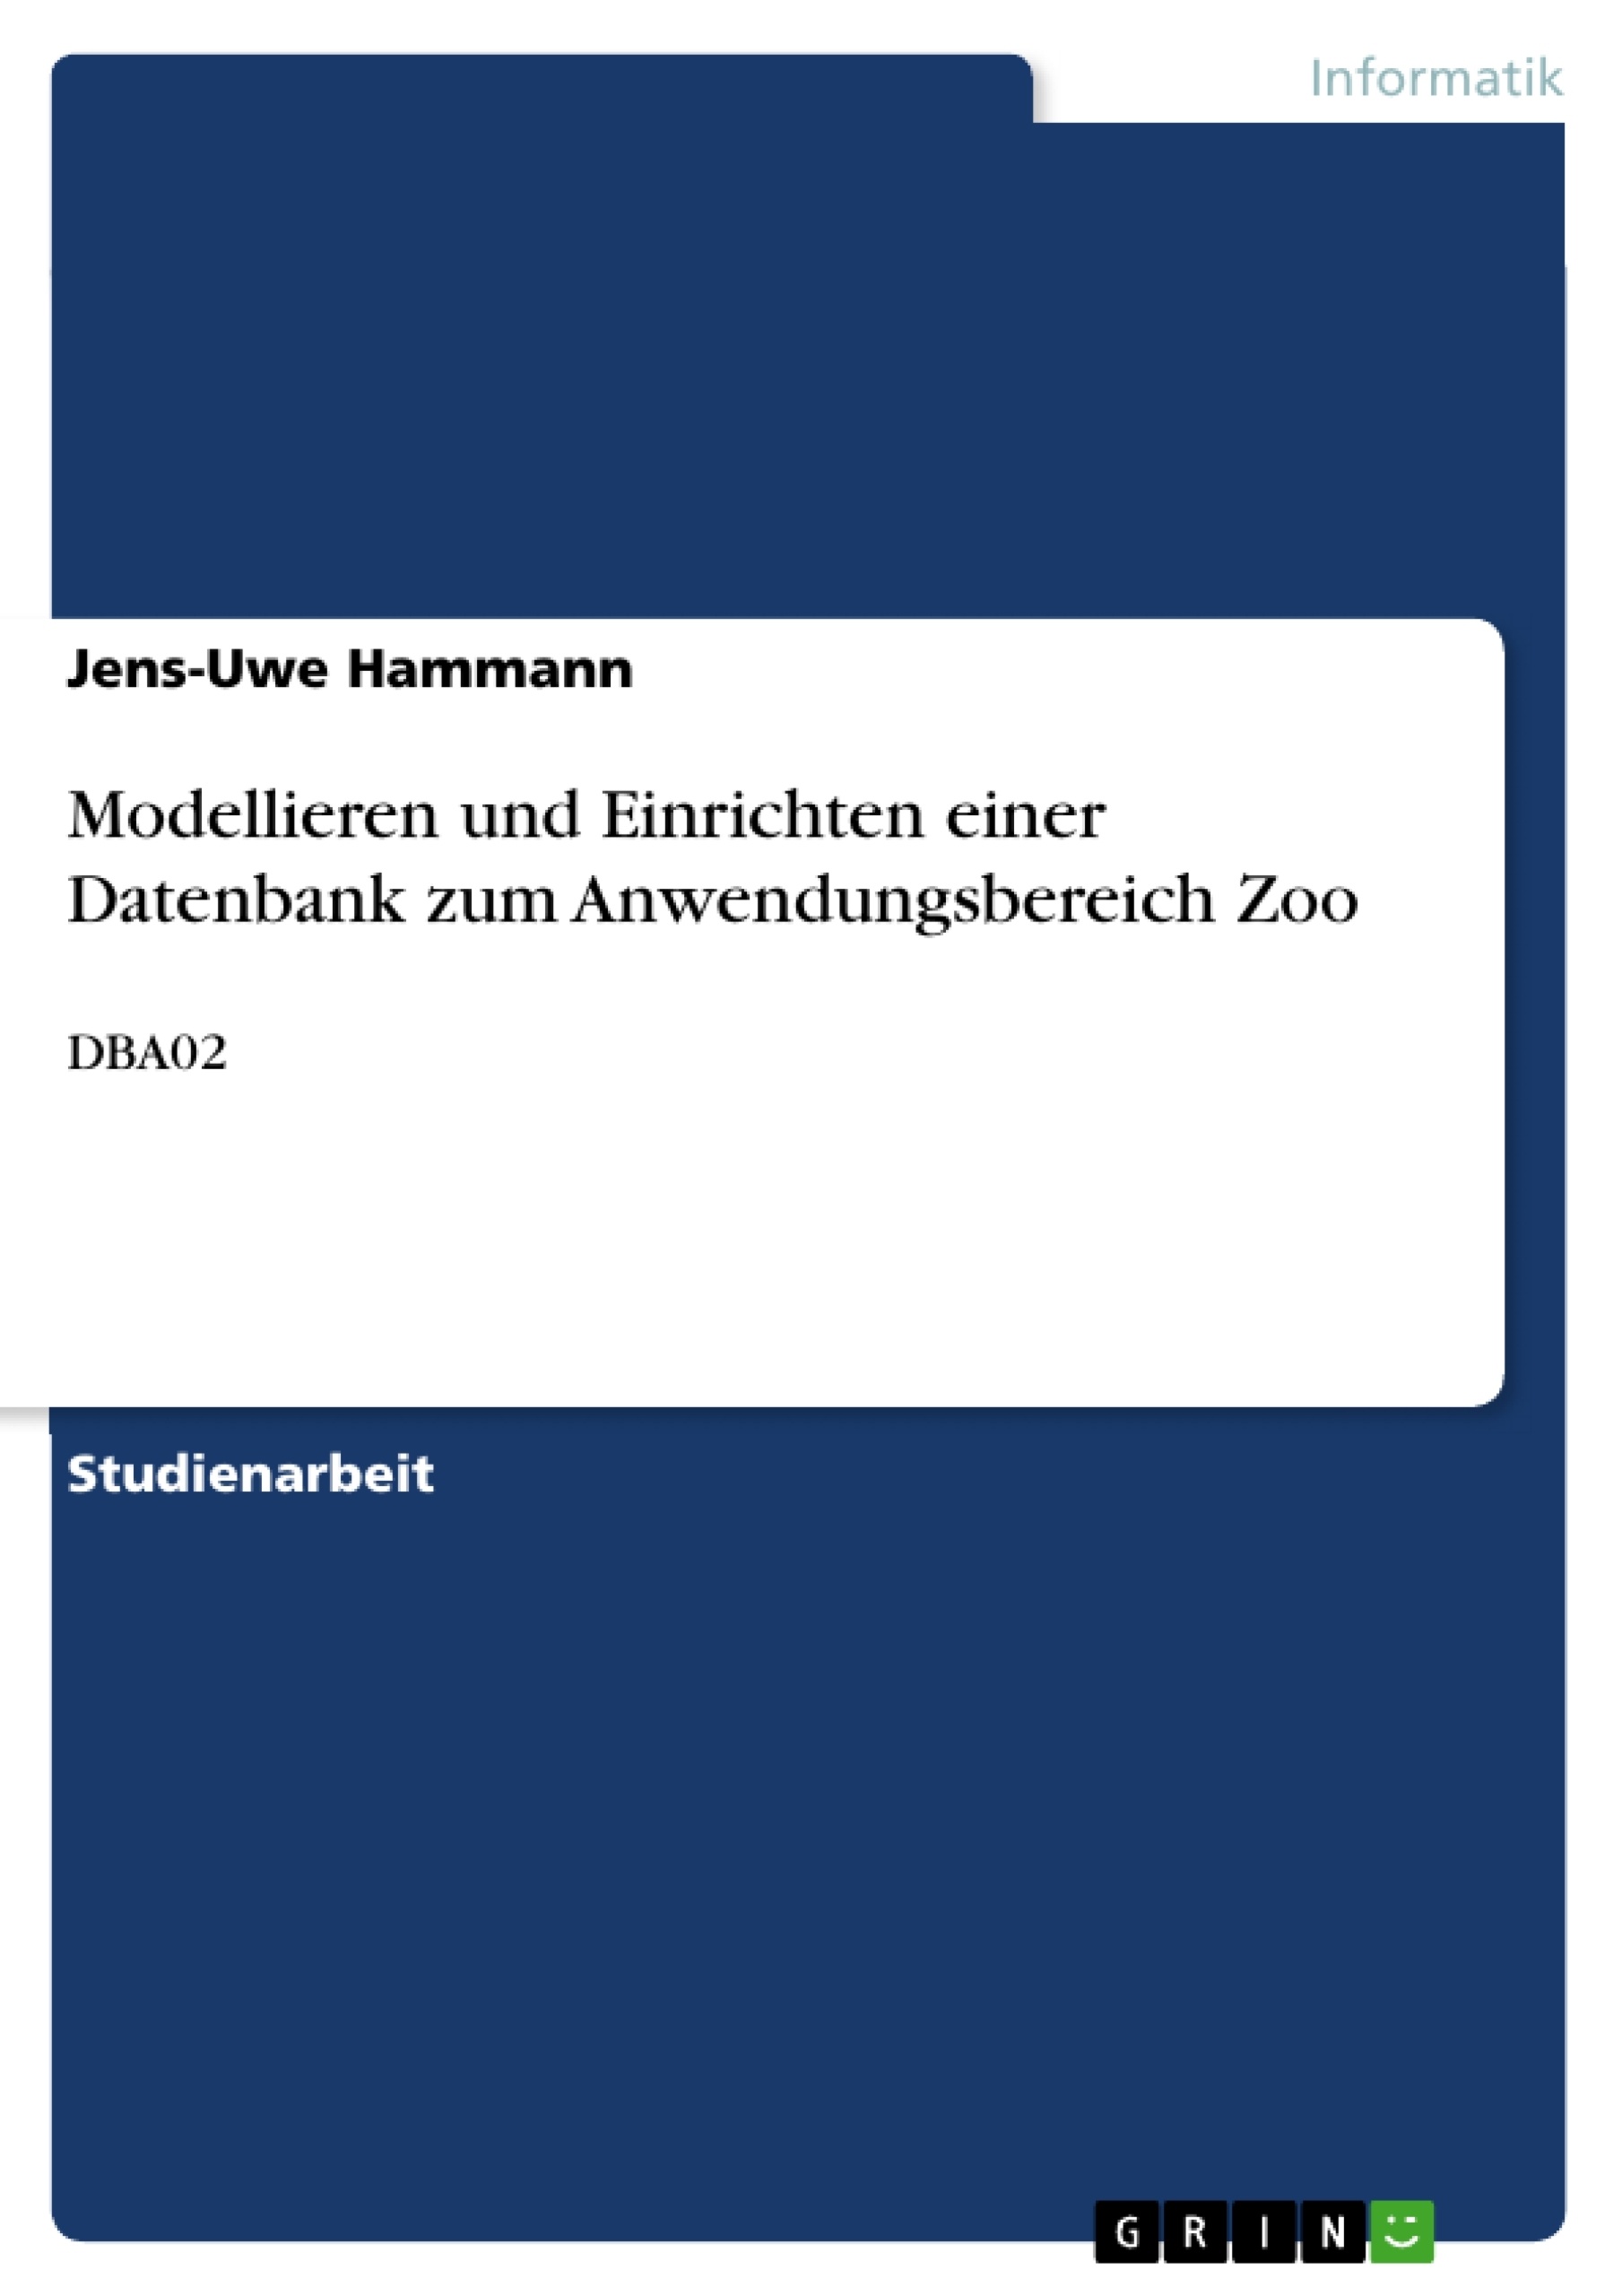 Title: Modellieren und Einrichten einer Datenbank zum Anwendungsbereich Zoo